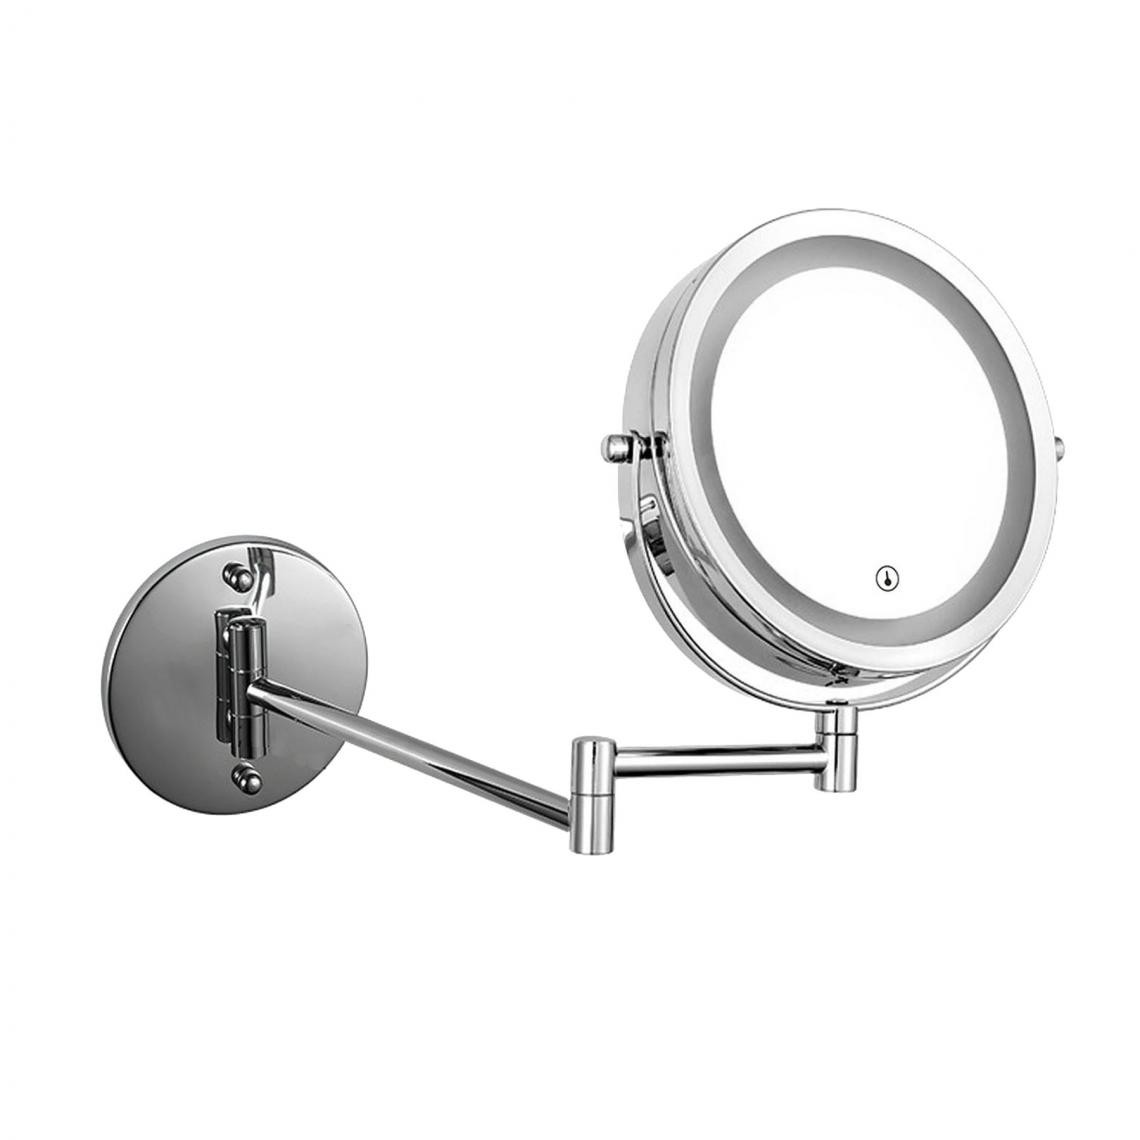 Universal - Miroir de salle de bains bras extensible pliant, LED tactile double face lumineuse réglable, commode murale miroir de maquillage agrandissement(Argent) - Miroir de salle de bain